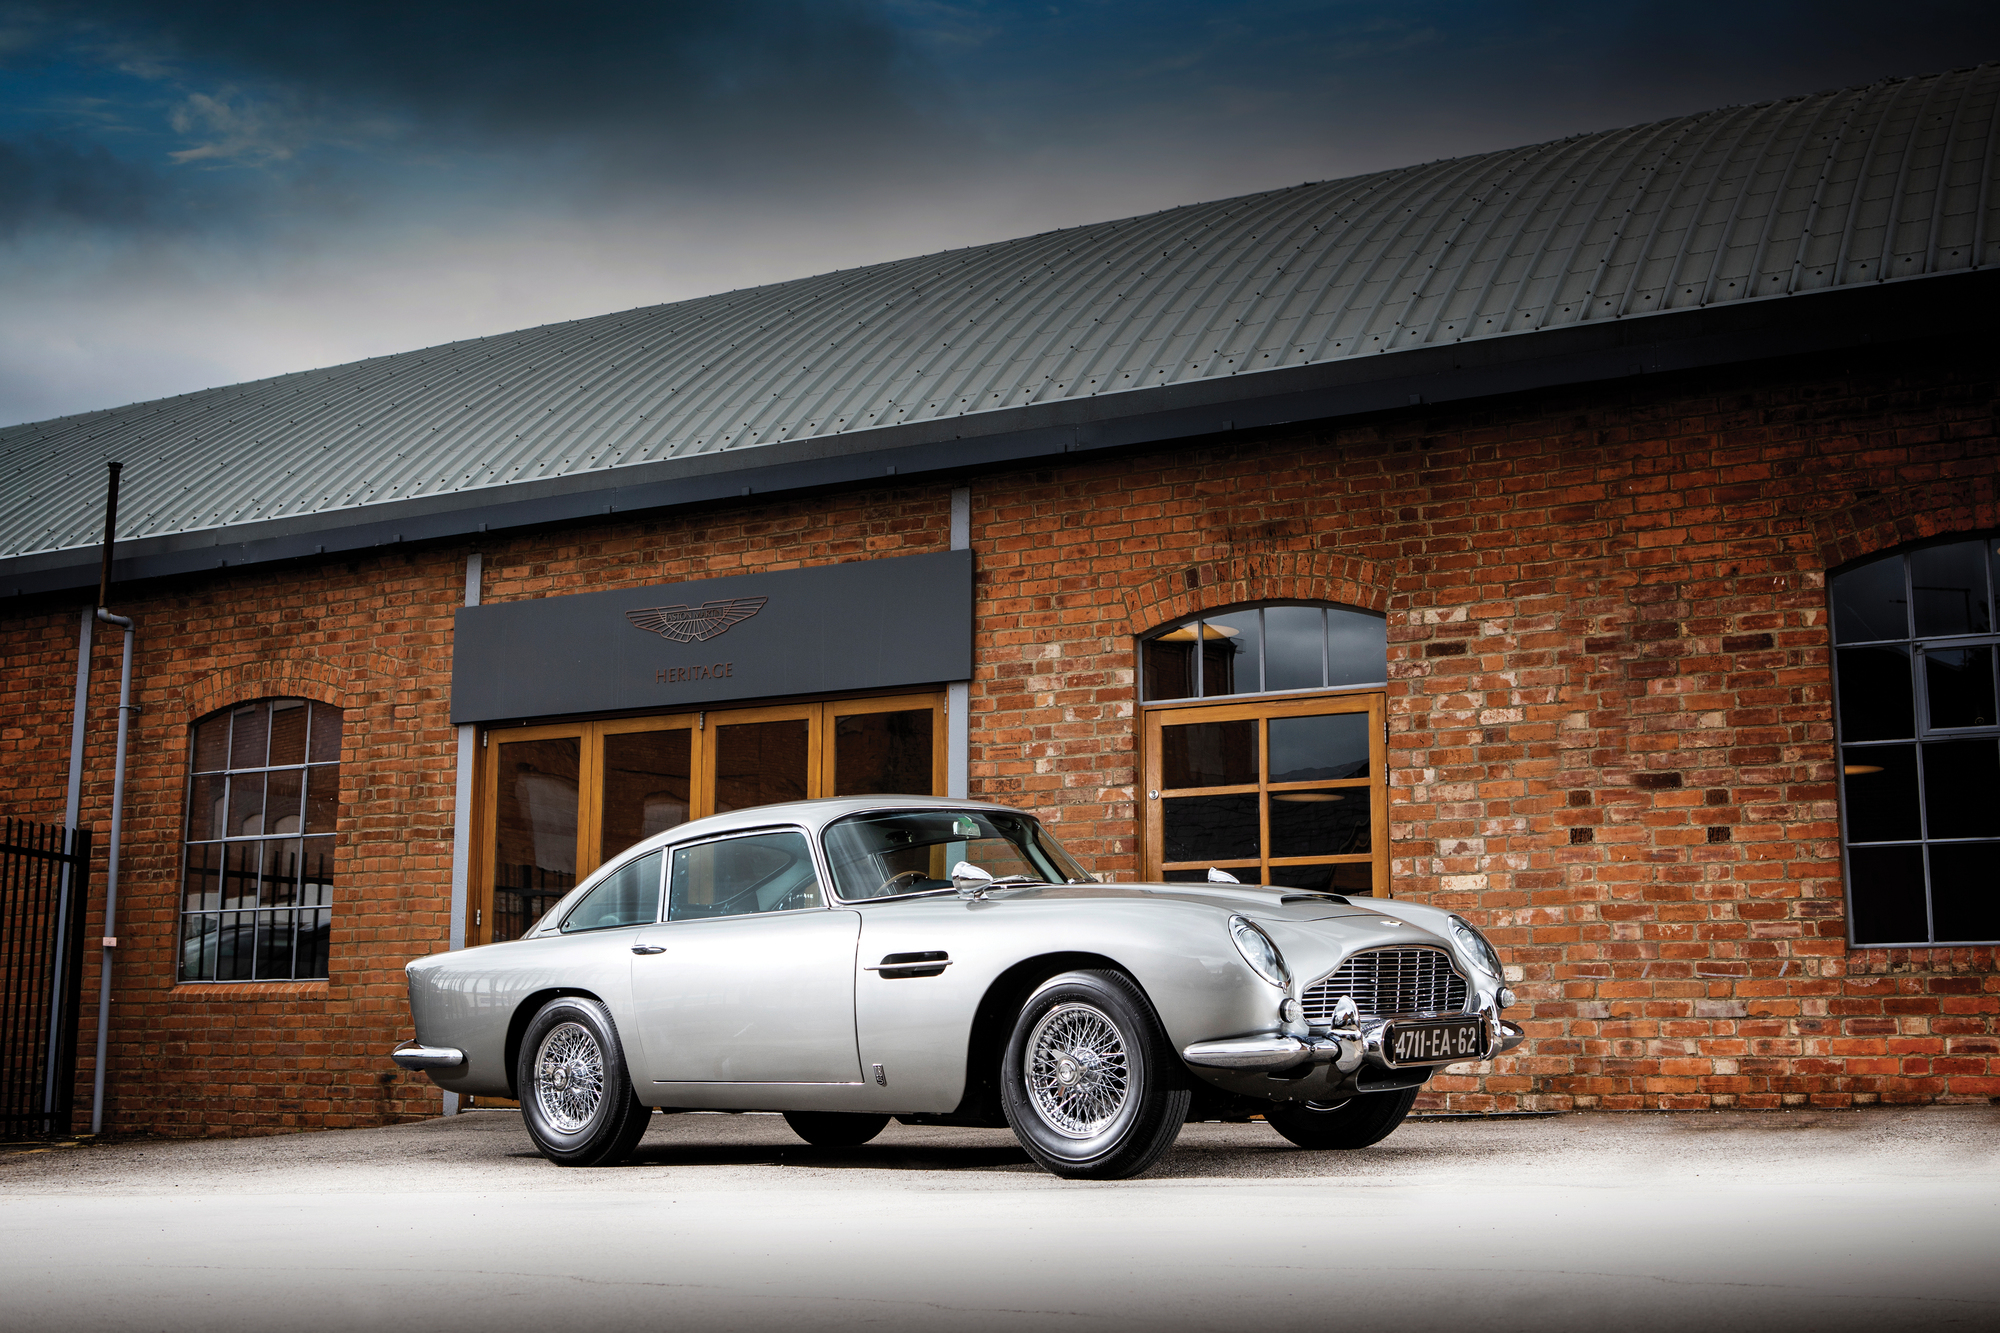 多次在 007 電影中展現風采的 Aston Martin DB5， 堪稱大螢幕上最常出現的 GT 跑車。